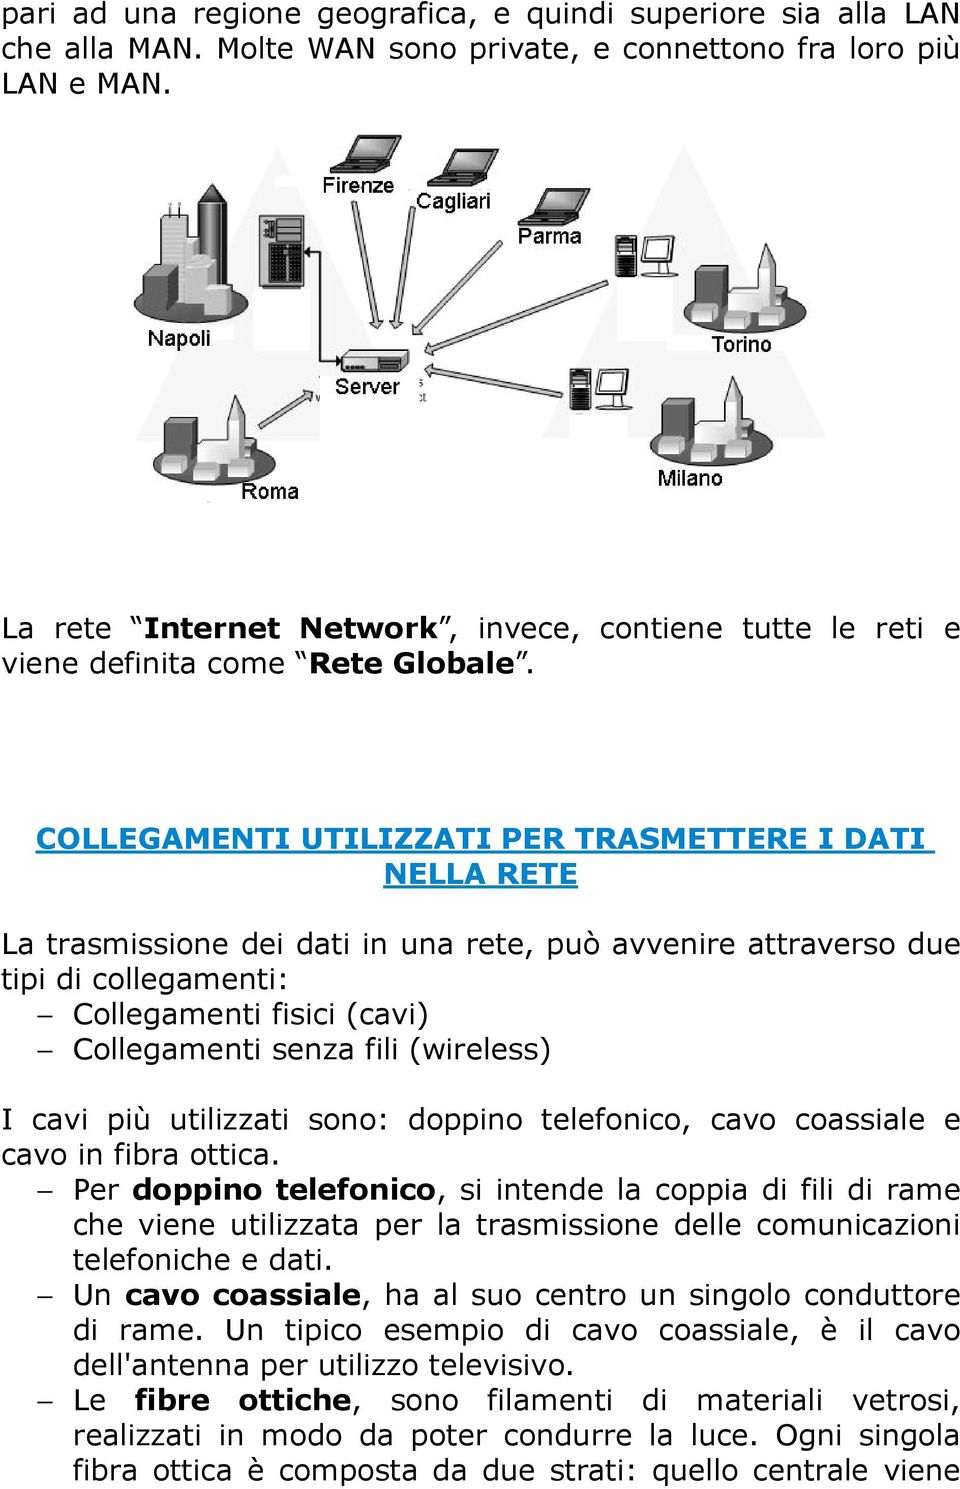 COLLEGAMENTI UTILIZZATI PER TRASMETTERE I DATI NELLA RETE La trasmissione dei dati in una rete, può avvenire attraverso due tipi di collegamenti: Collegamenti fisici (cavi) Collegamenti senza fili